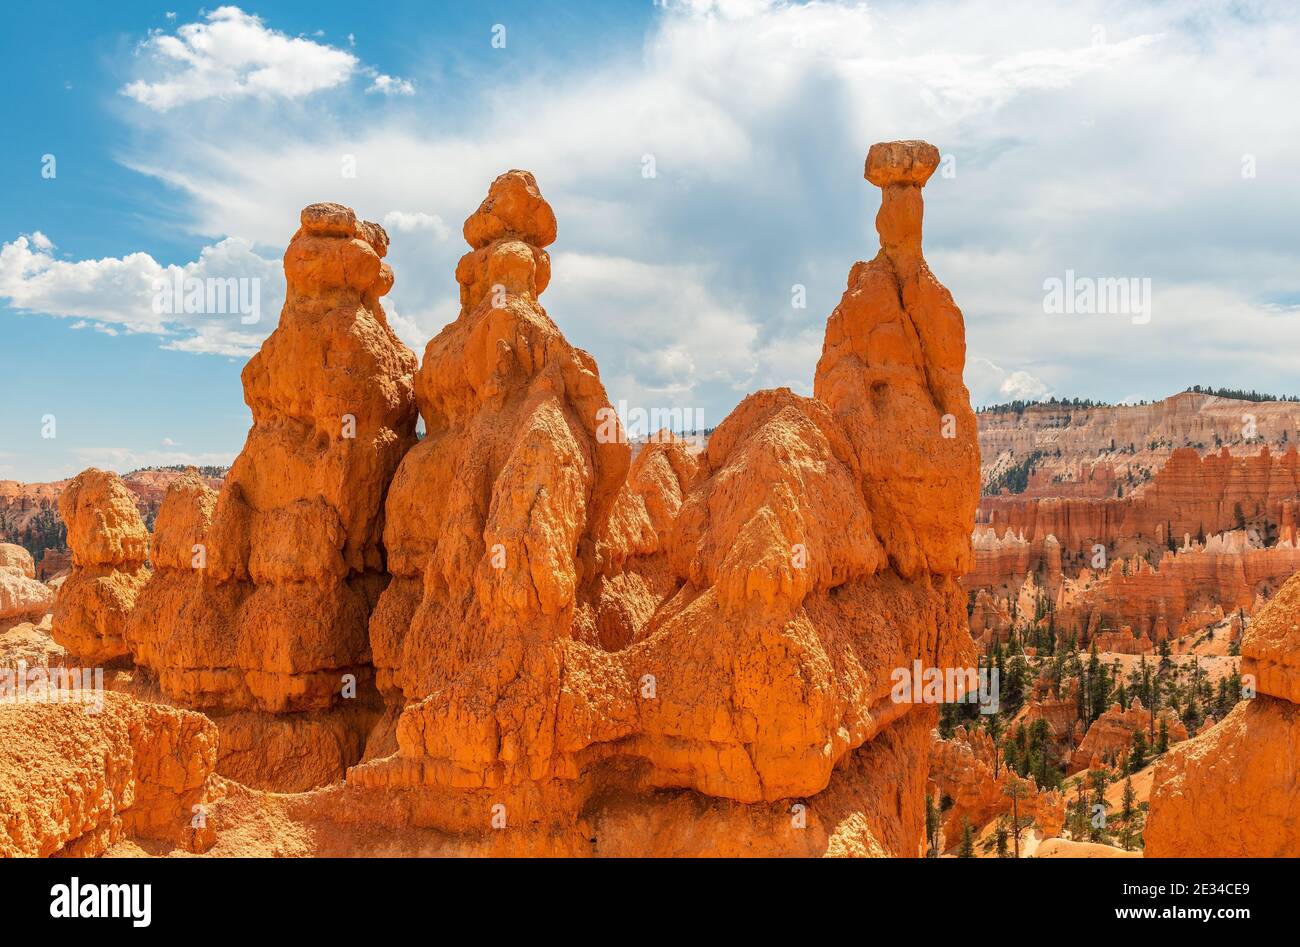 Formations rocheuses de grès Hoodoo avec marteau Thor, parc national de Bryce Canyon, Utah, États-Unis d'Amérique. Banque D'Images